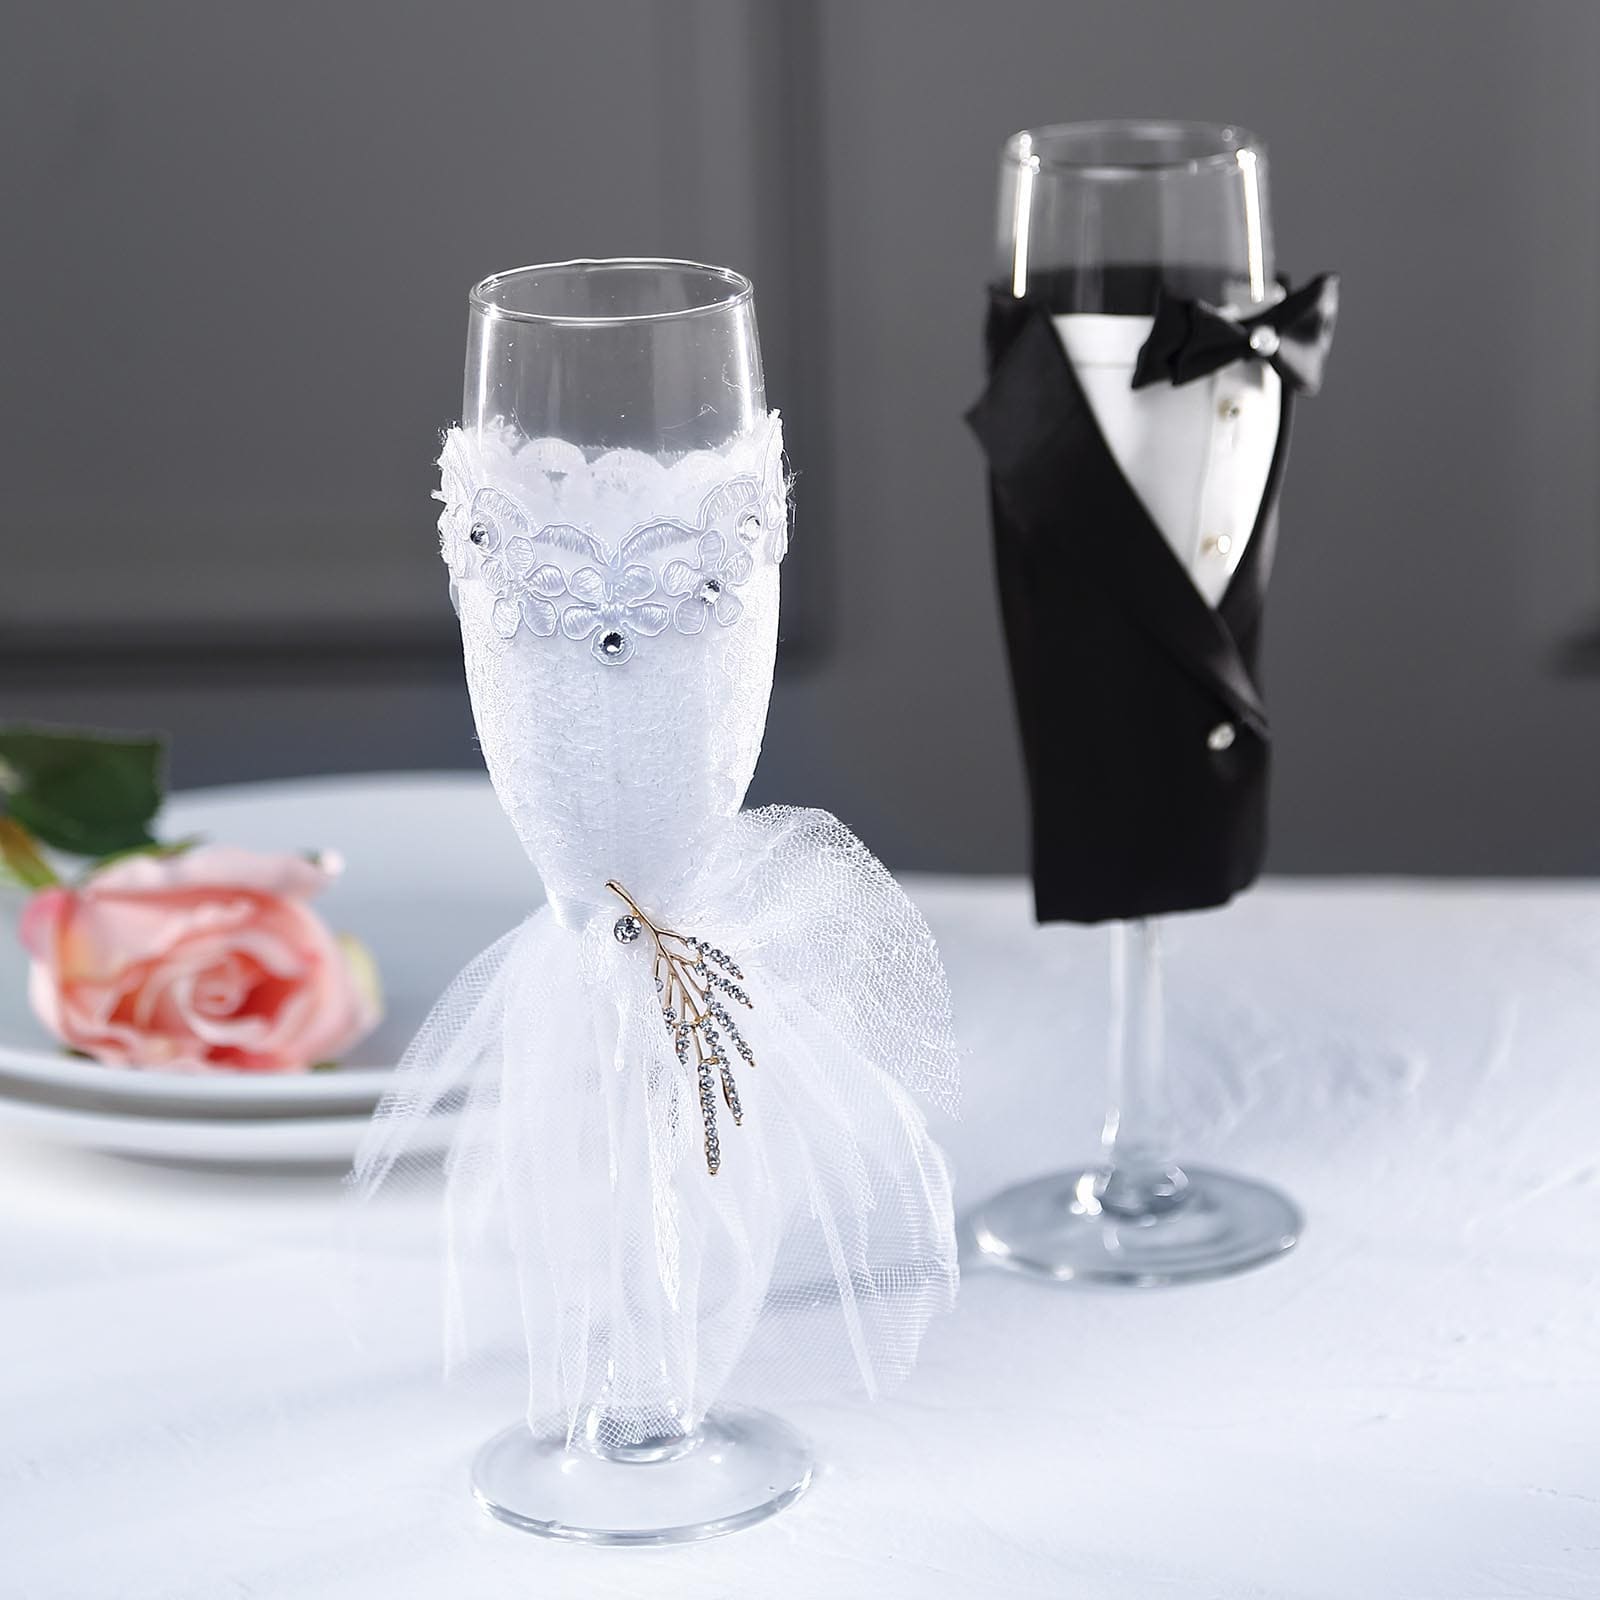 Black Bride & Groom Koozie Champagne Glasses | eFavormart.com